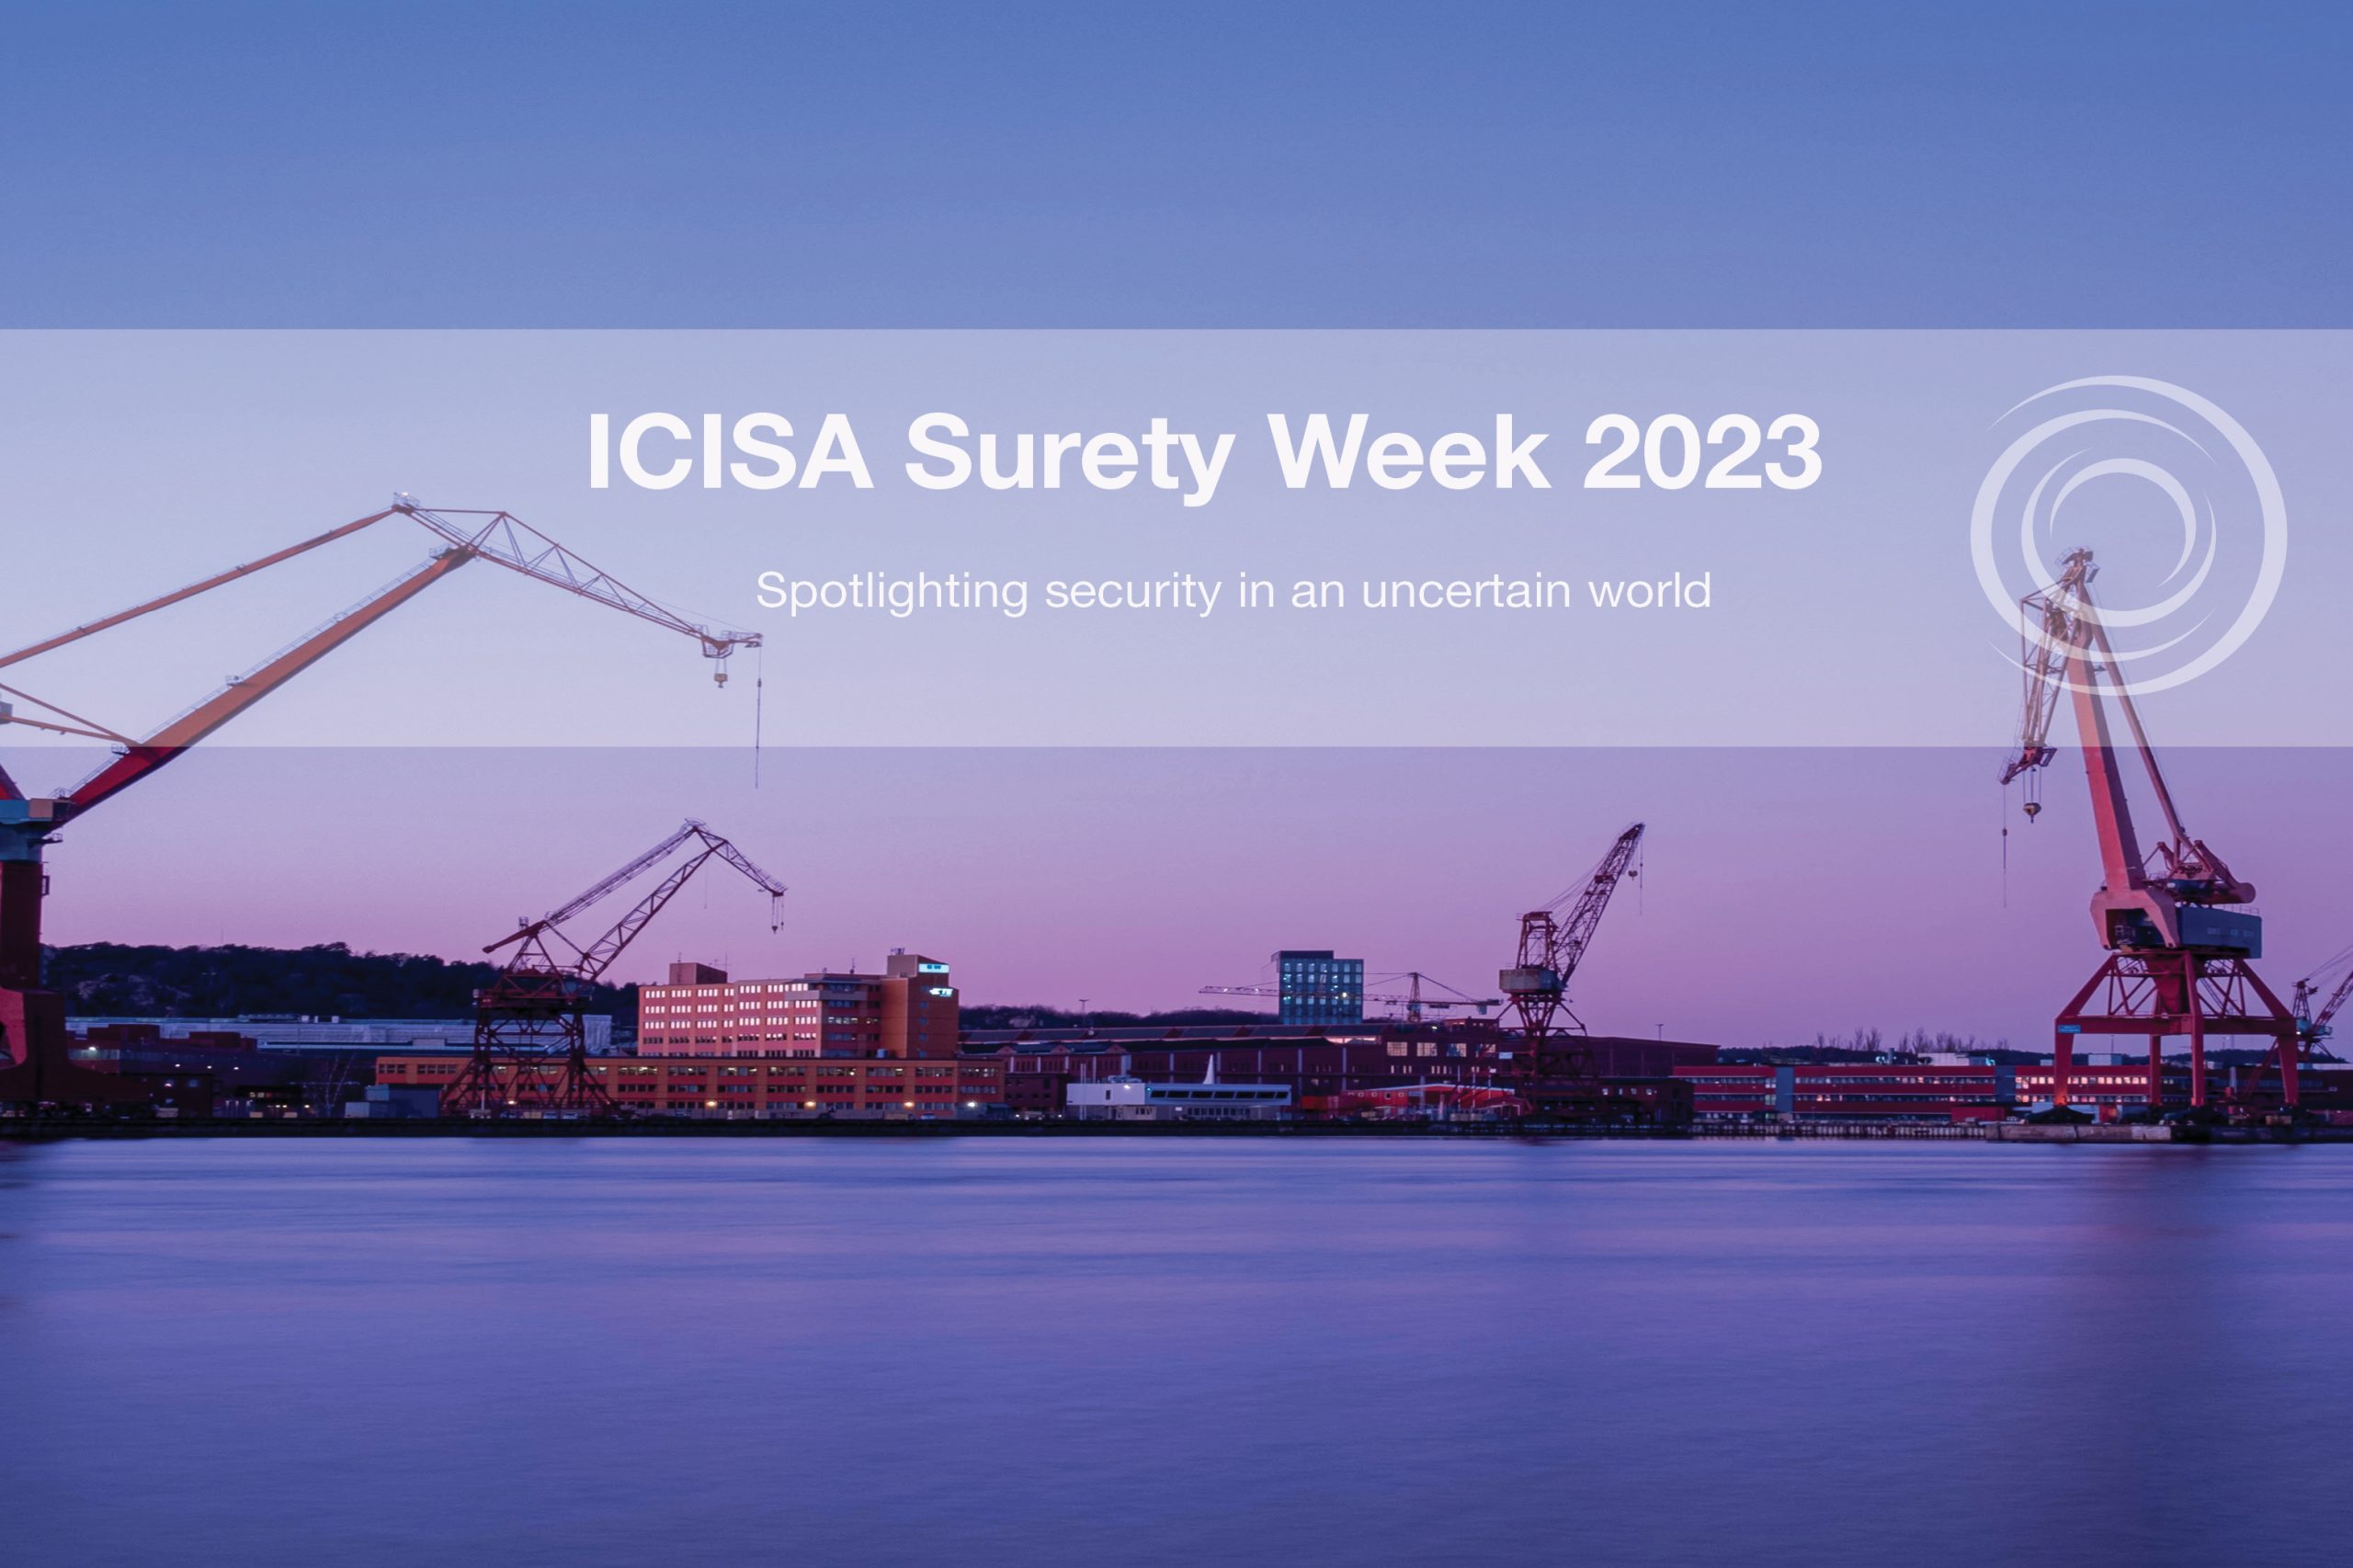 ICISA Surety Week 2023